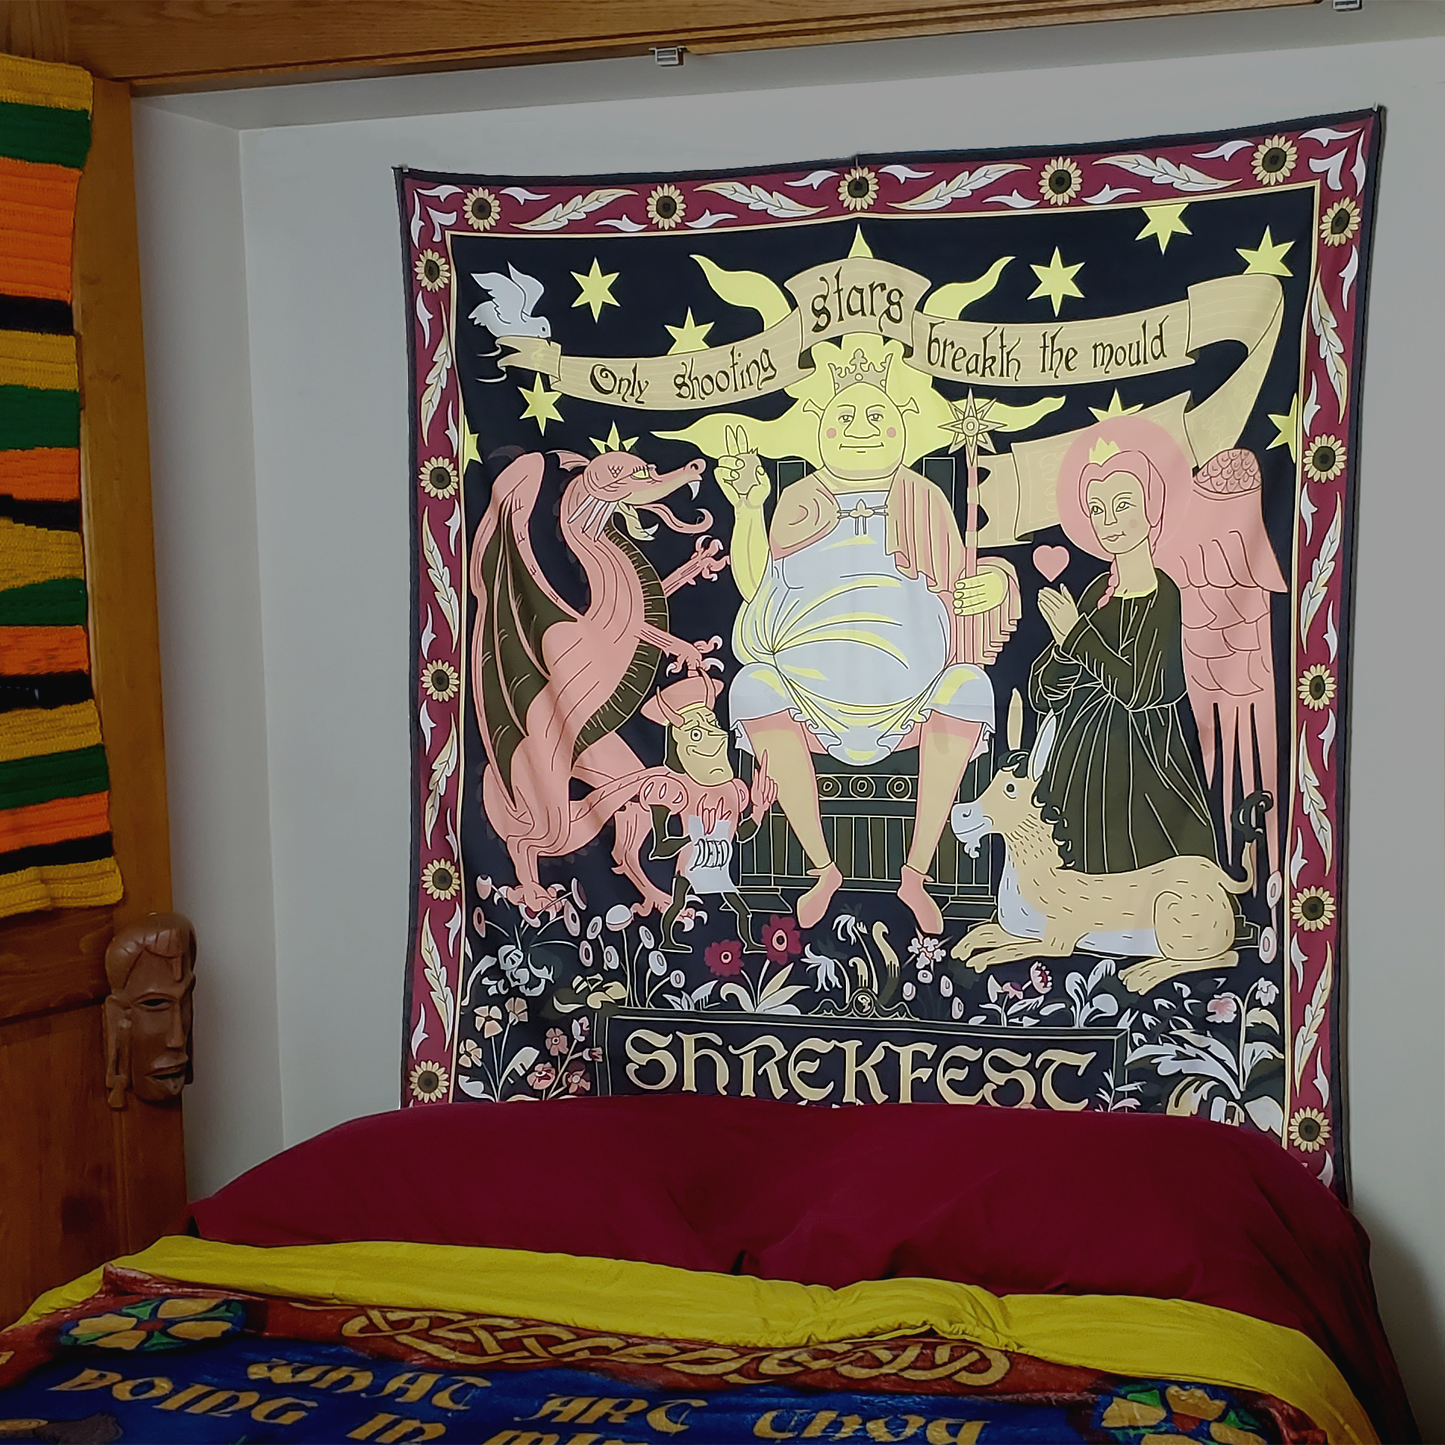 "Only Shooting Stars" Shrekfest Tapestry